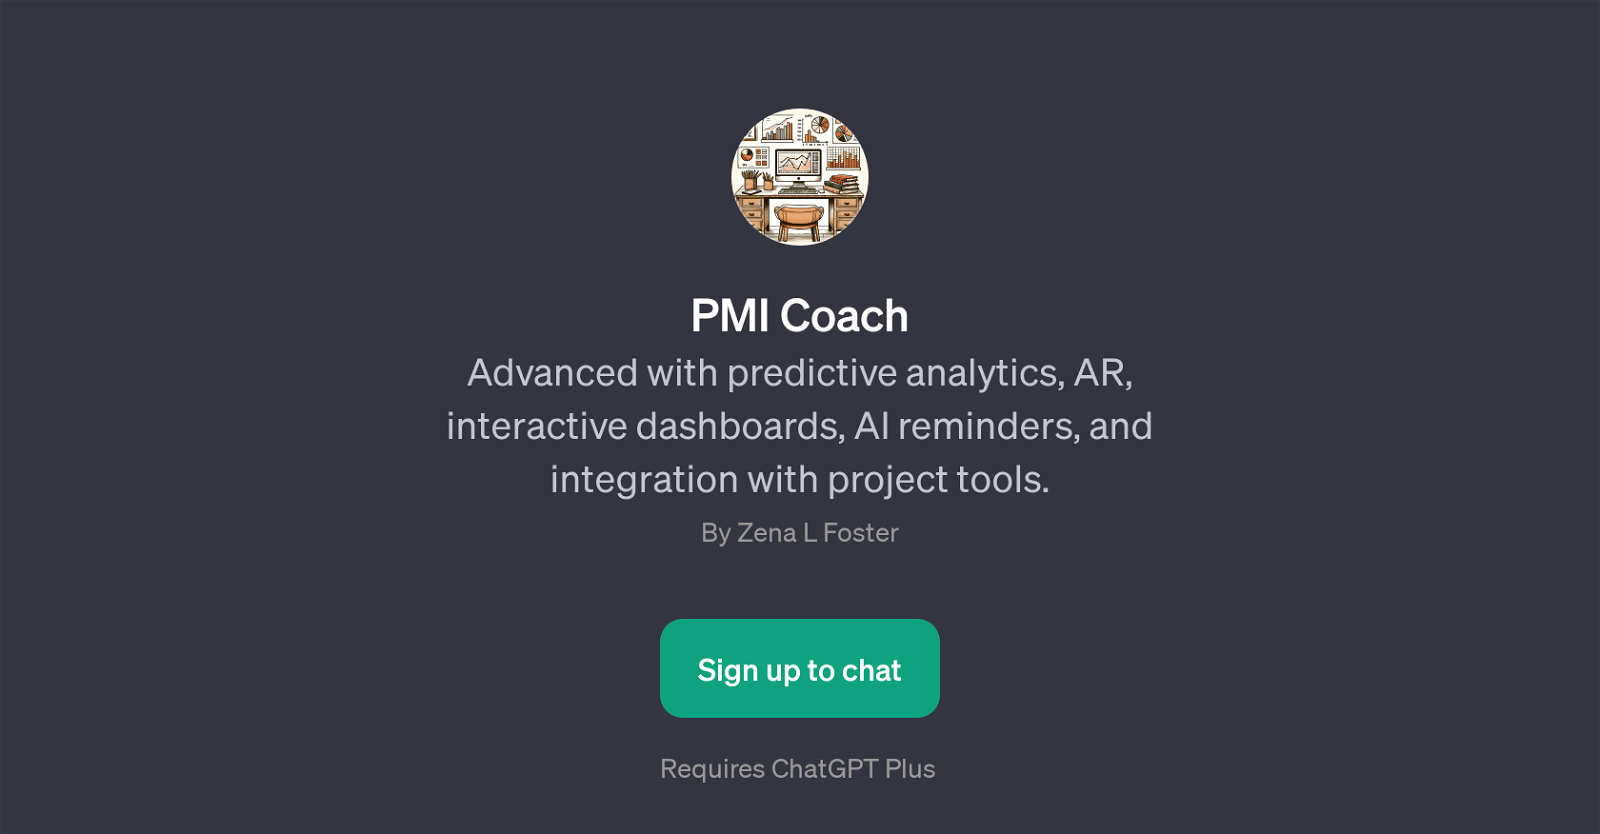 PMI Coach website